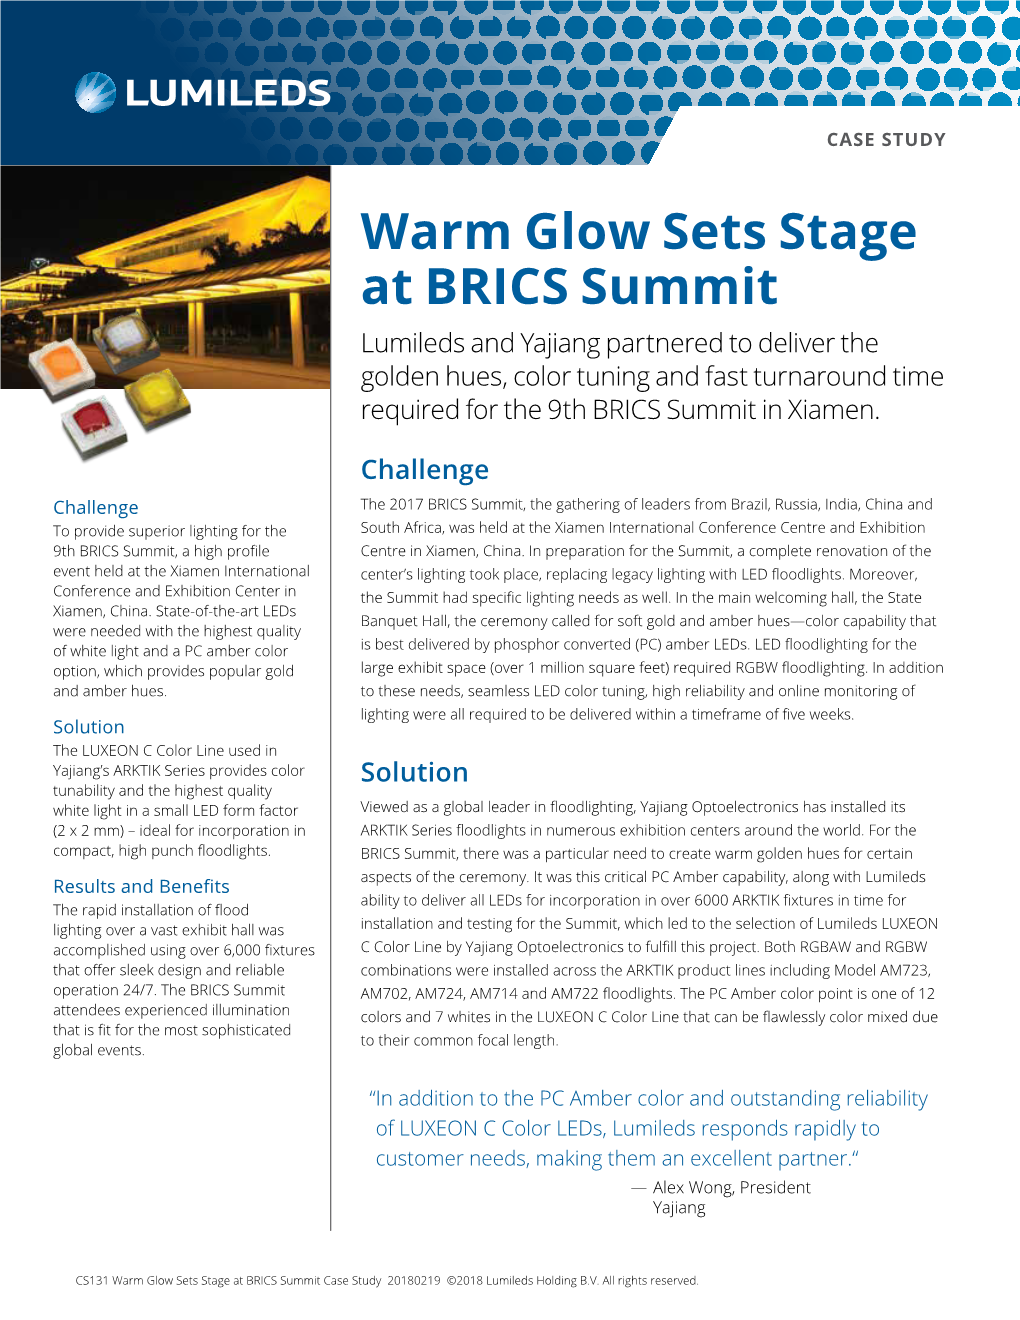 Warm Glow Sets Stage at BRICS Summit